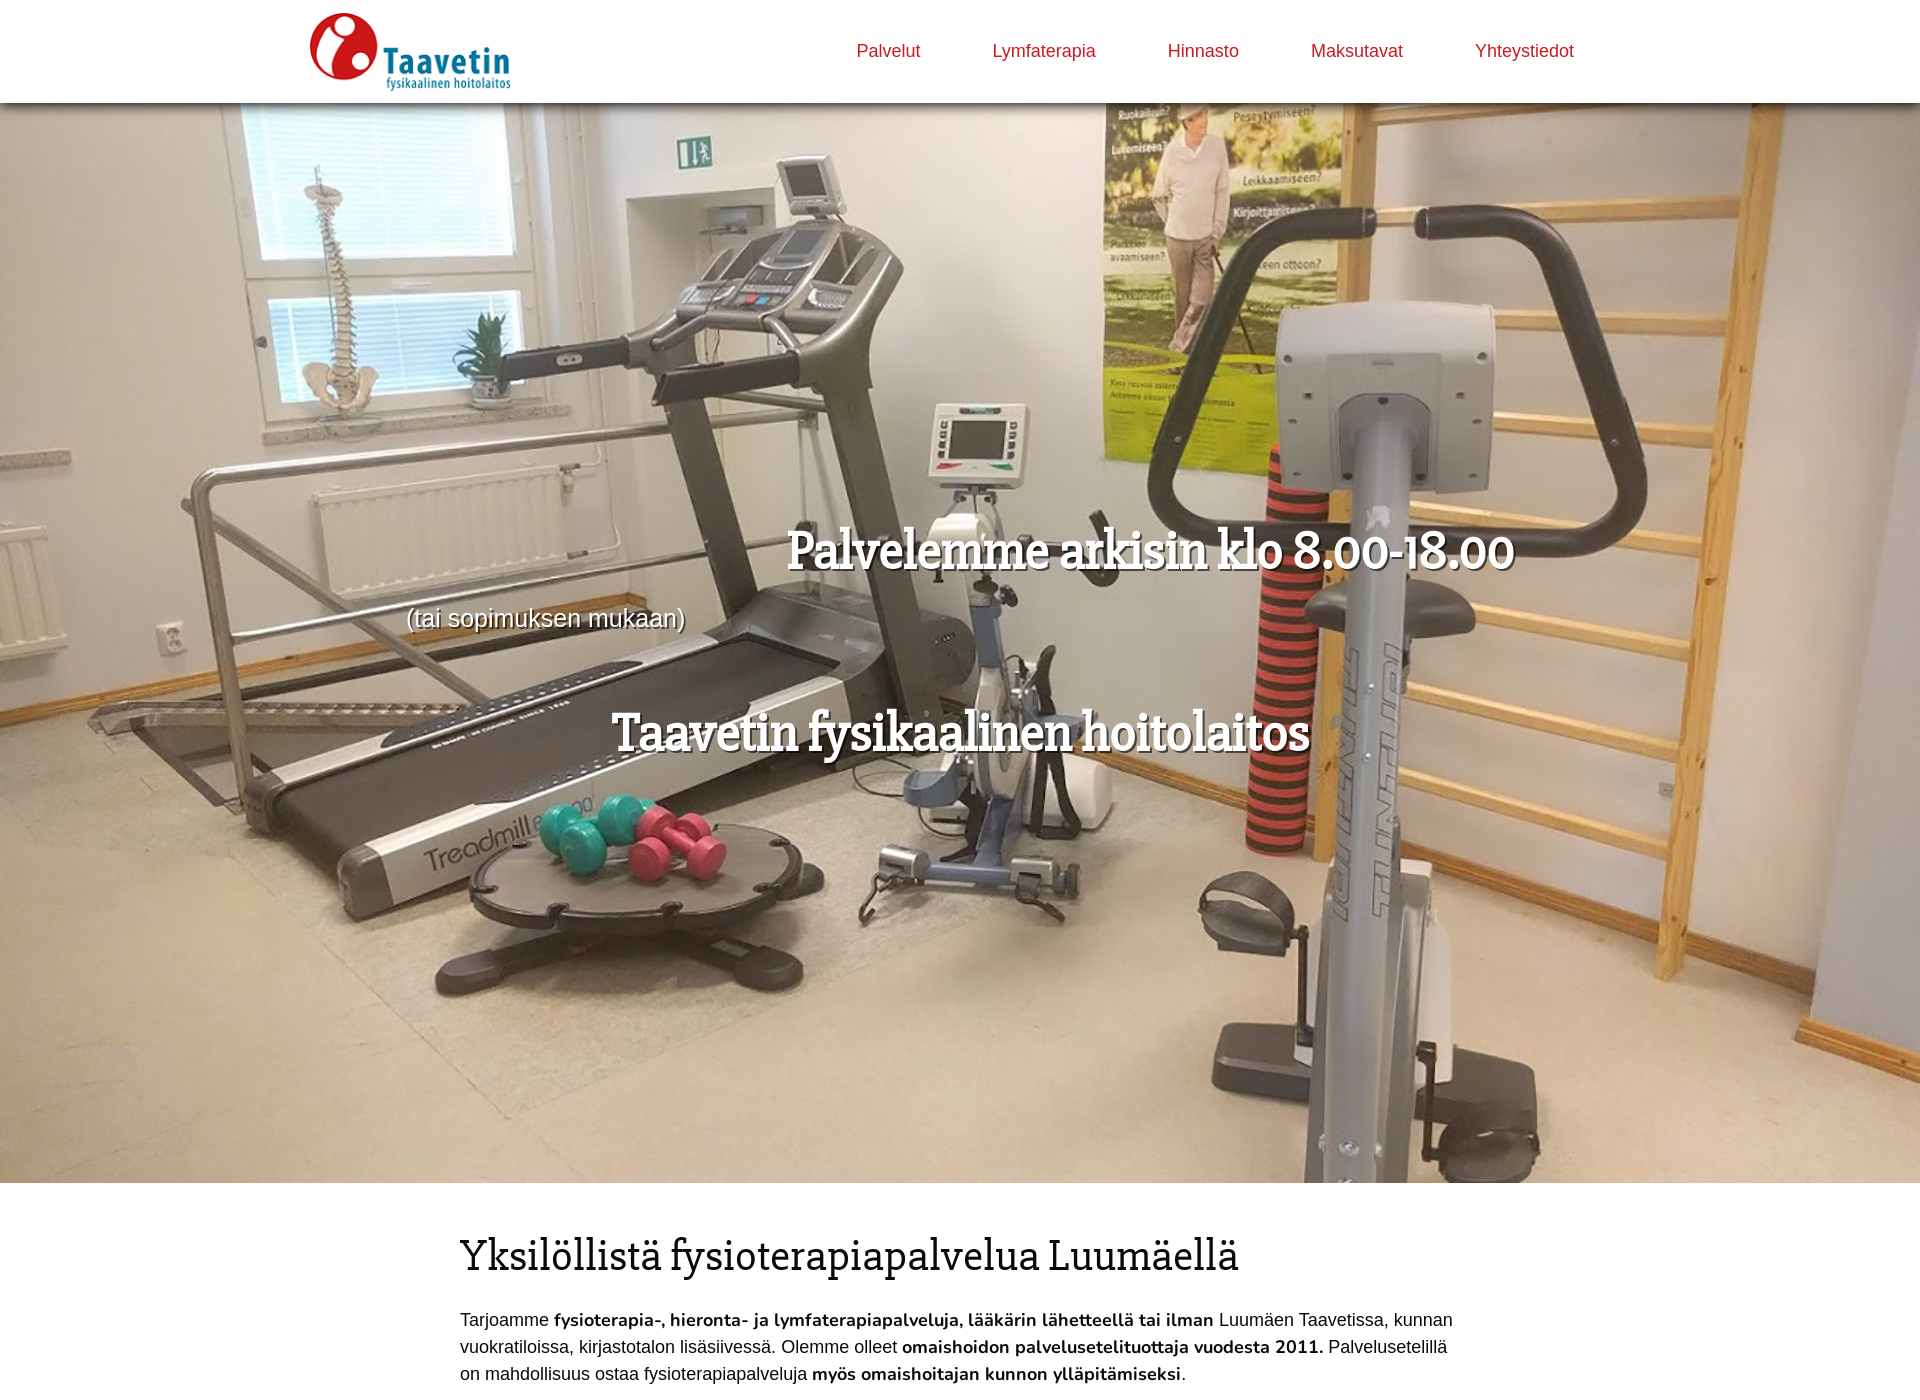 Näyttökuva taavetinfysikaalinen.fi